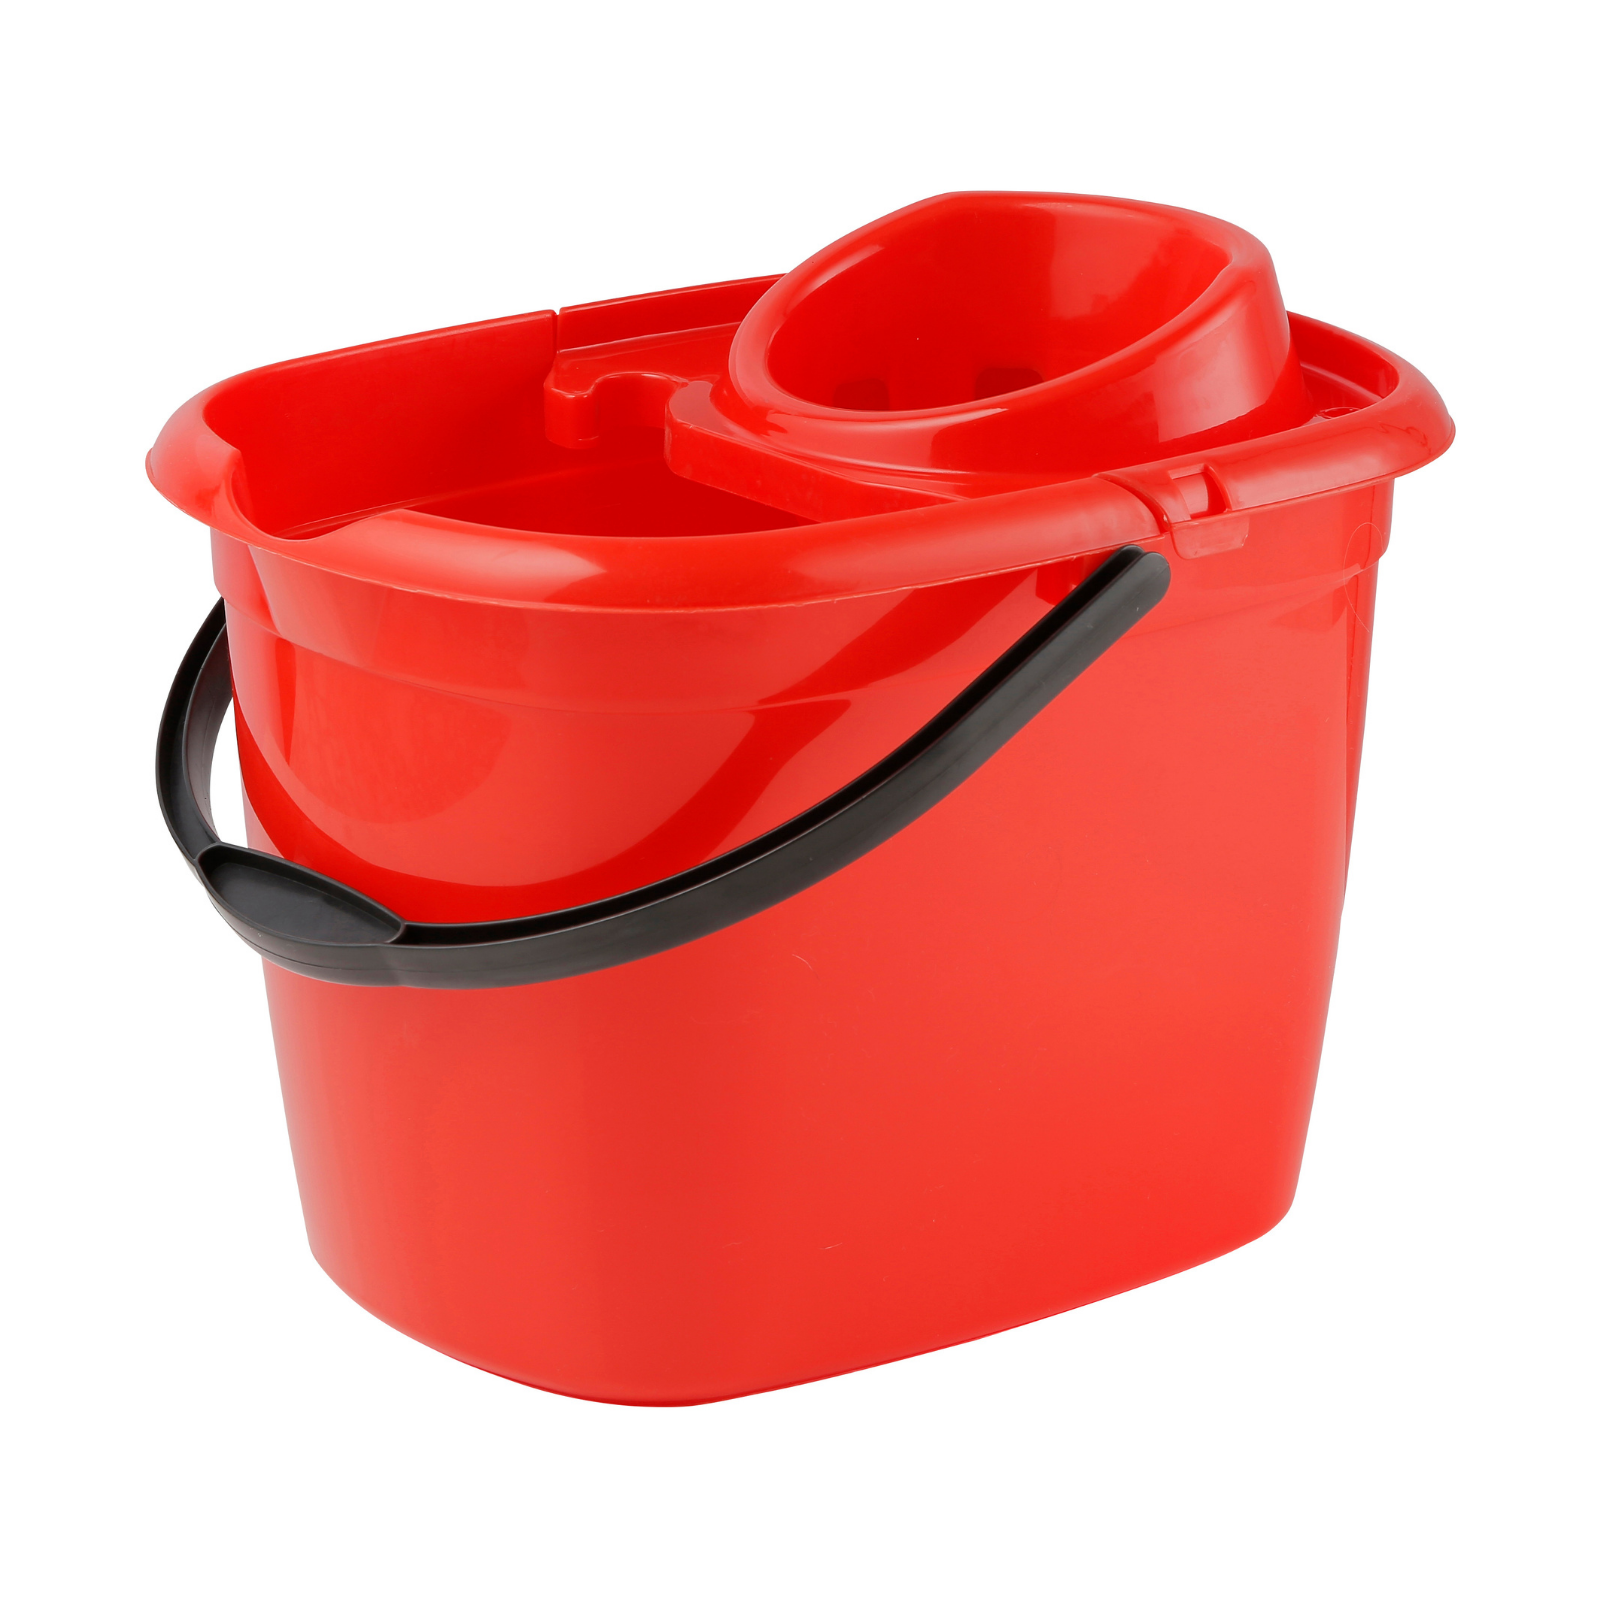 14 Ltr Standard Mop Bucket - Red